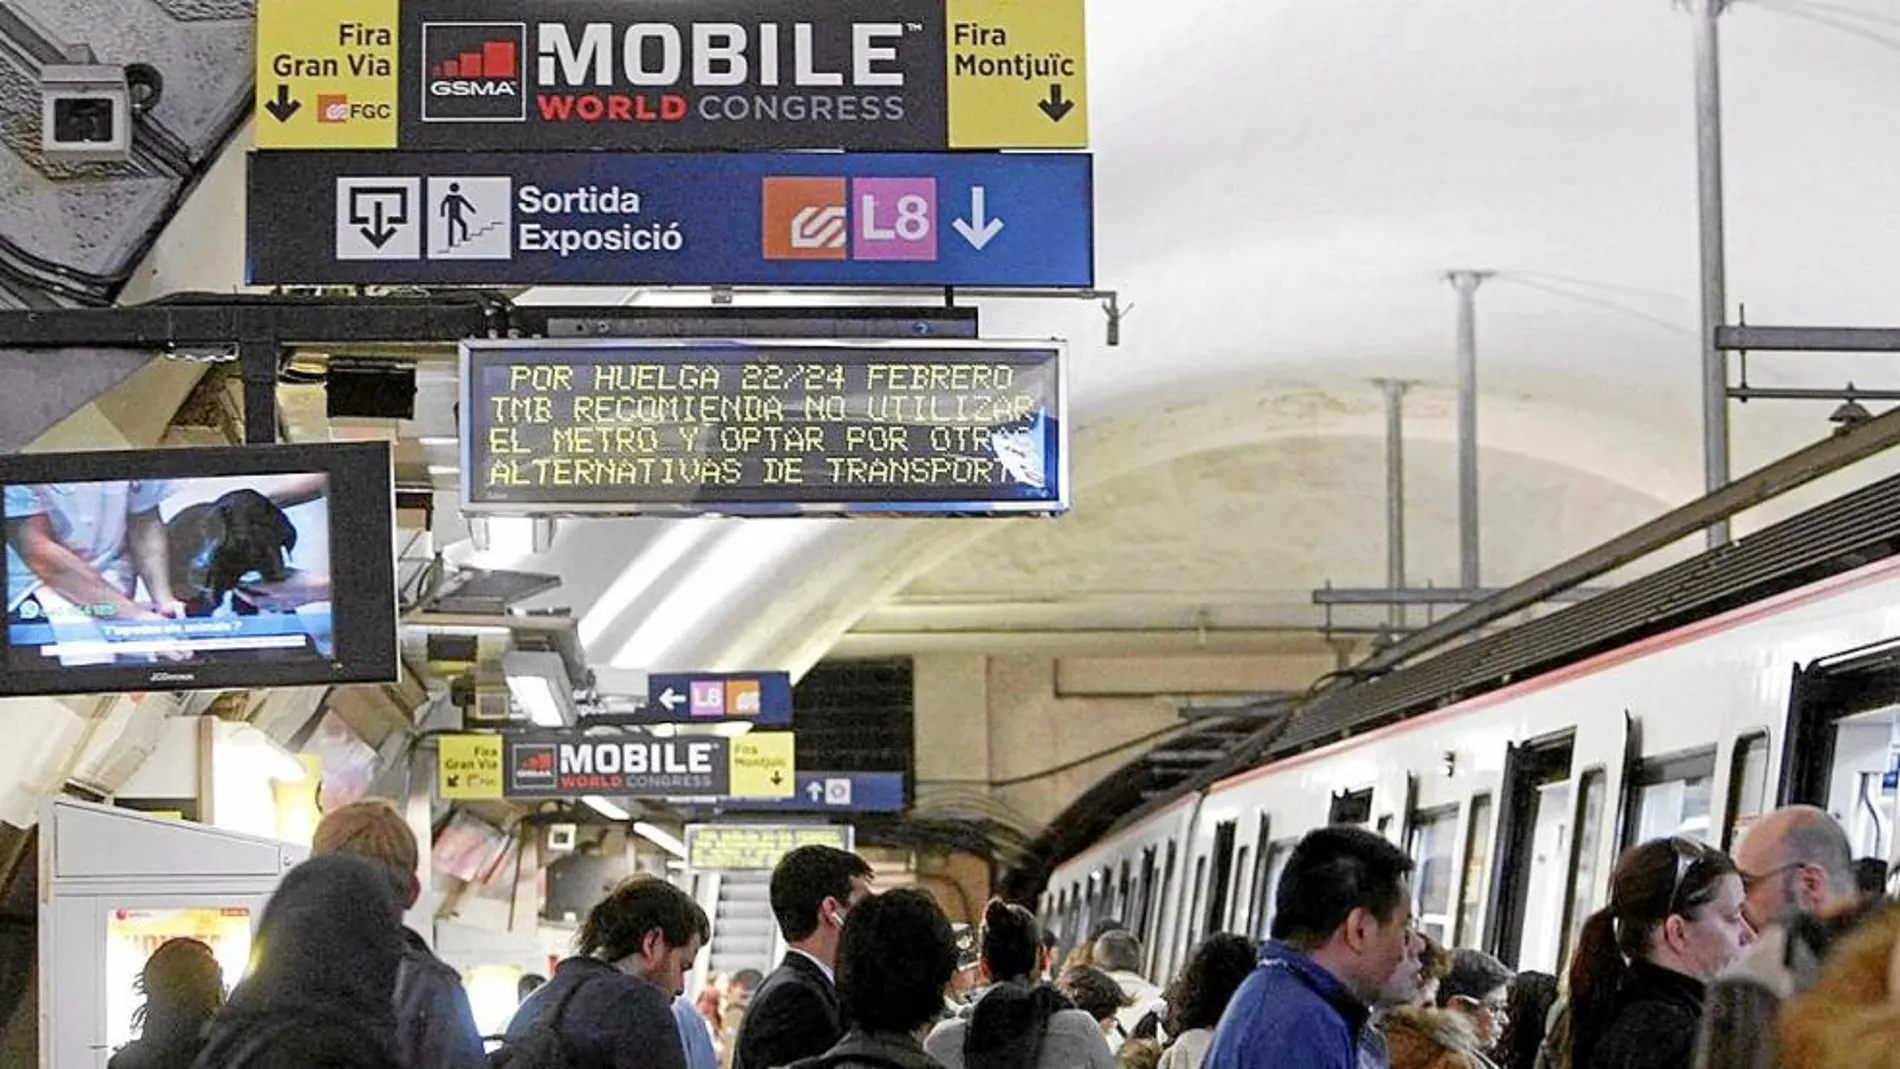 Imagen de la huelga del metro de la psada edición del Mobile World Congress